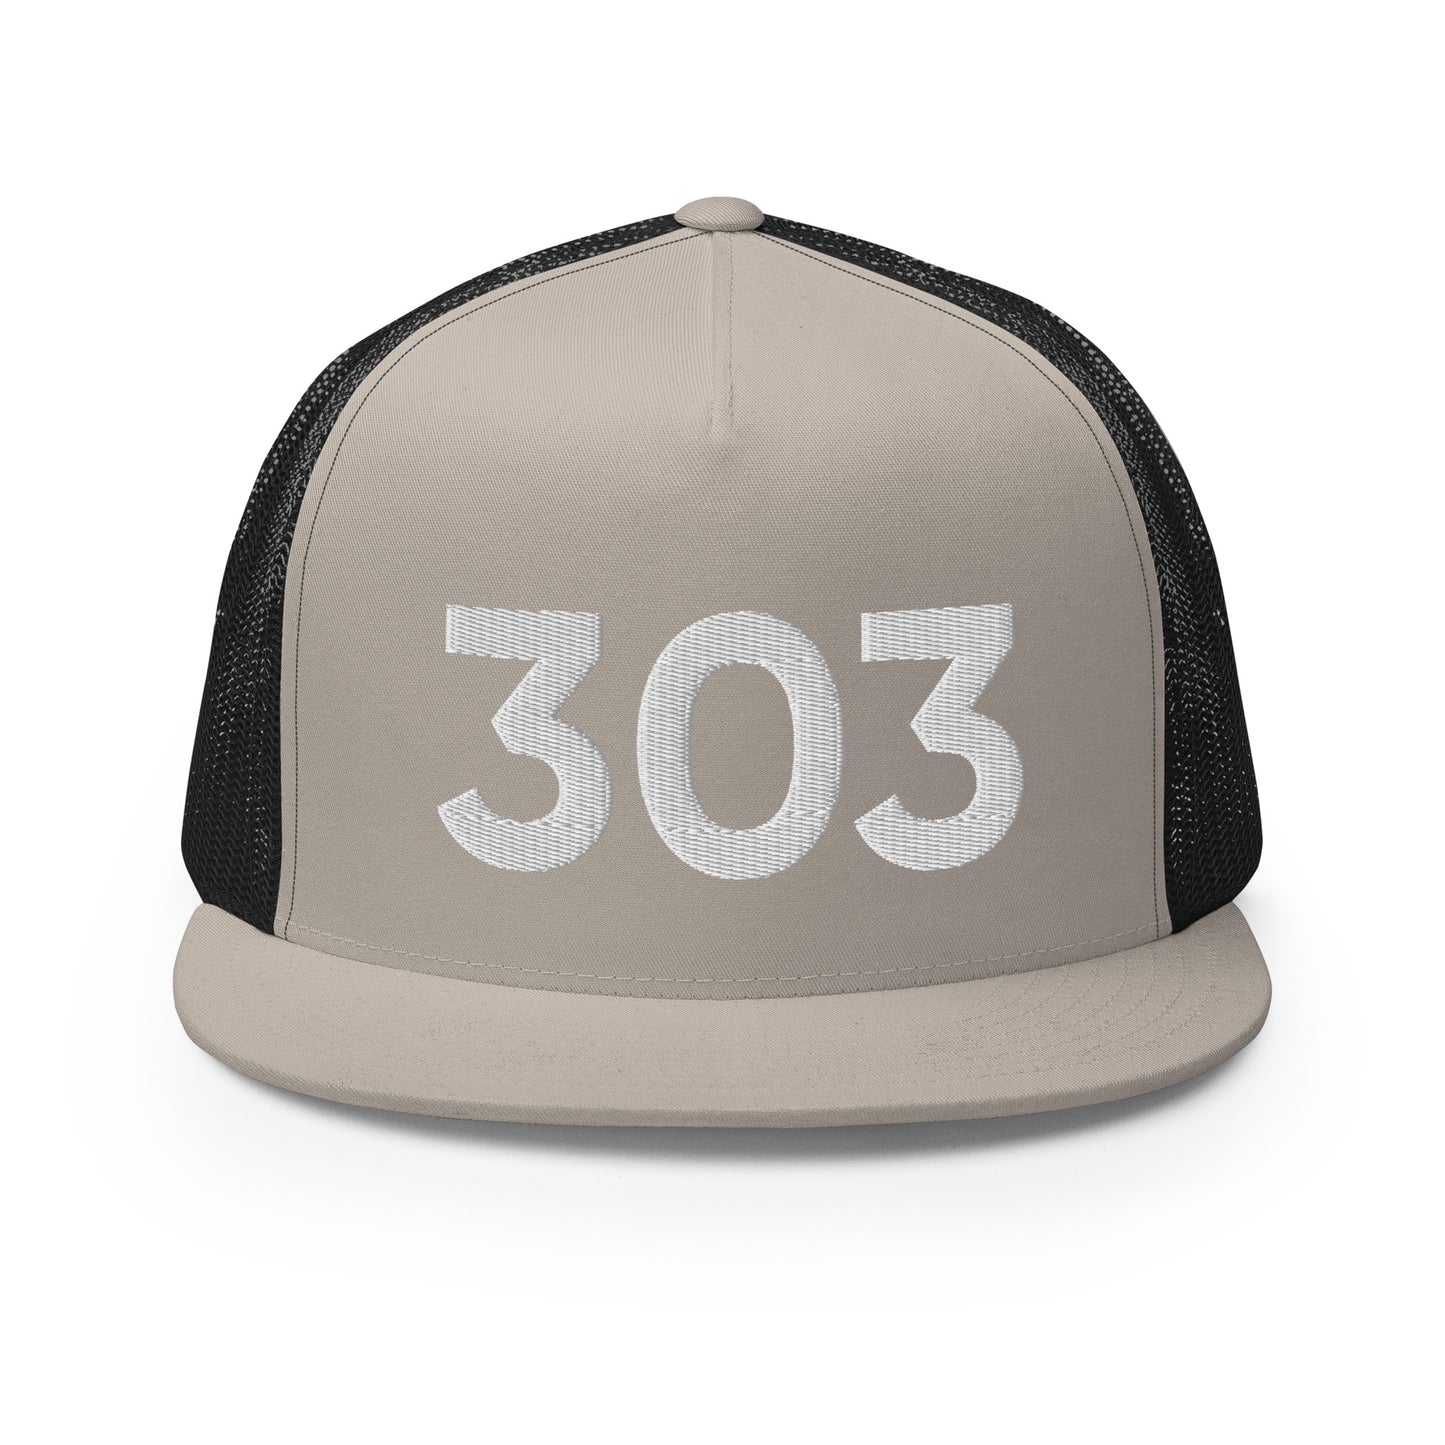 303 Denver Trucker Hat